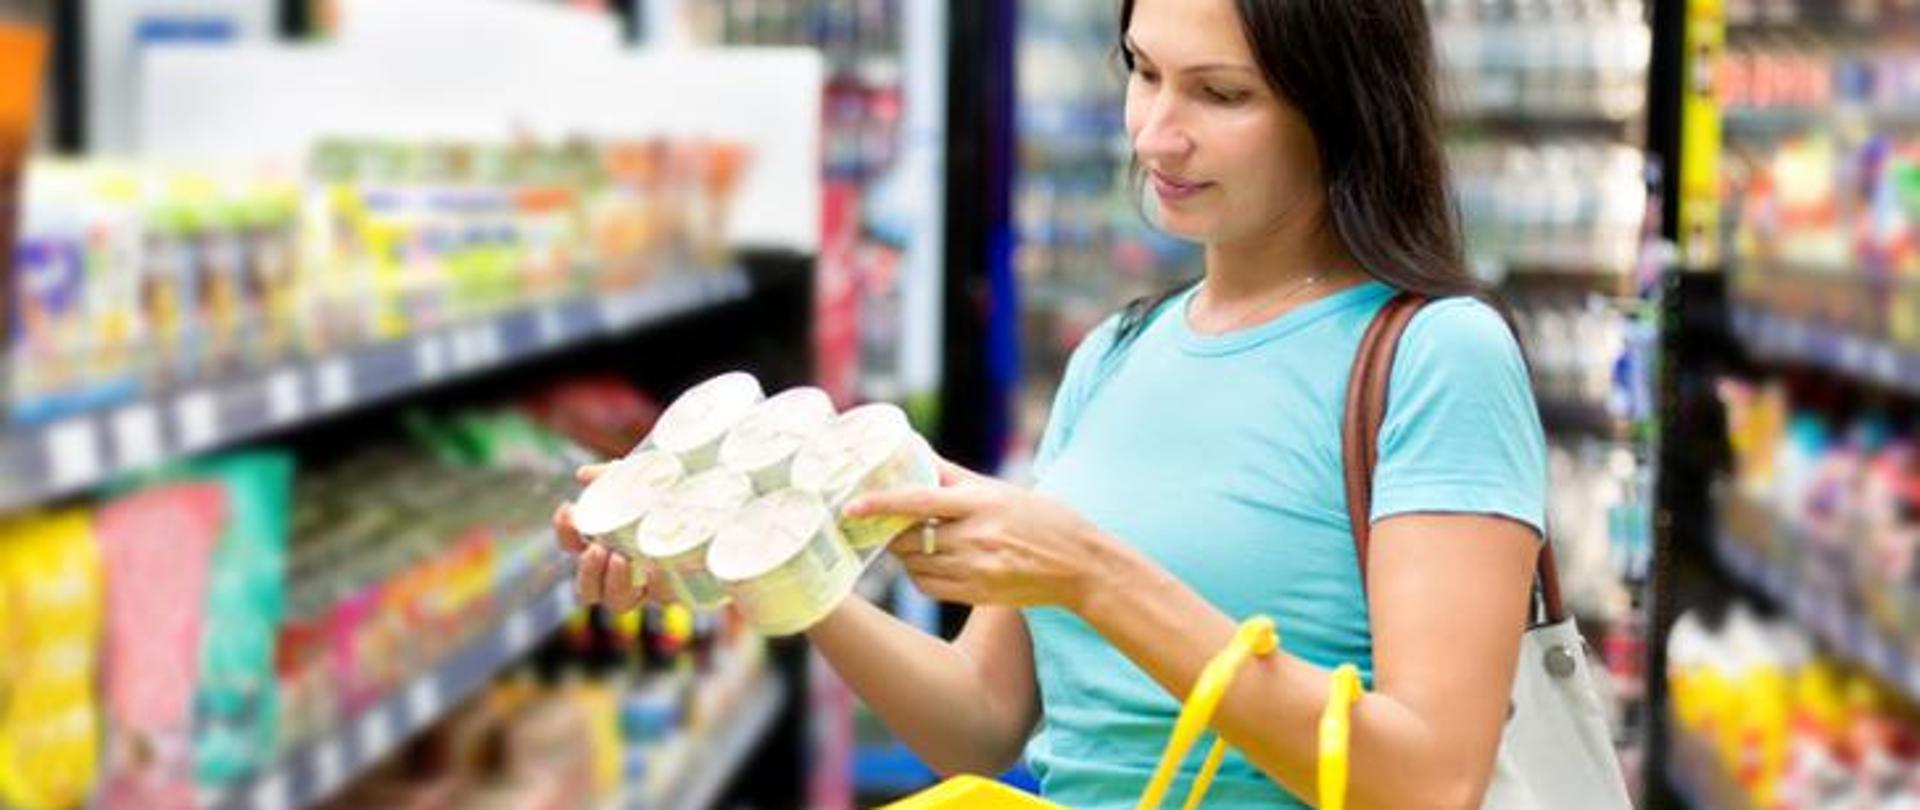 Kobieta ciemne długie włosy niebieska koszulka trzyma w ręku produkty spożywcze czyta etykiety na produkcie. w tle regały sklepowe